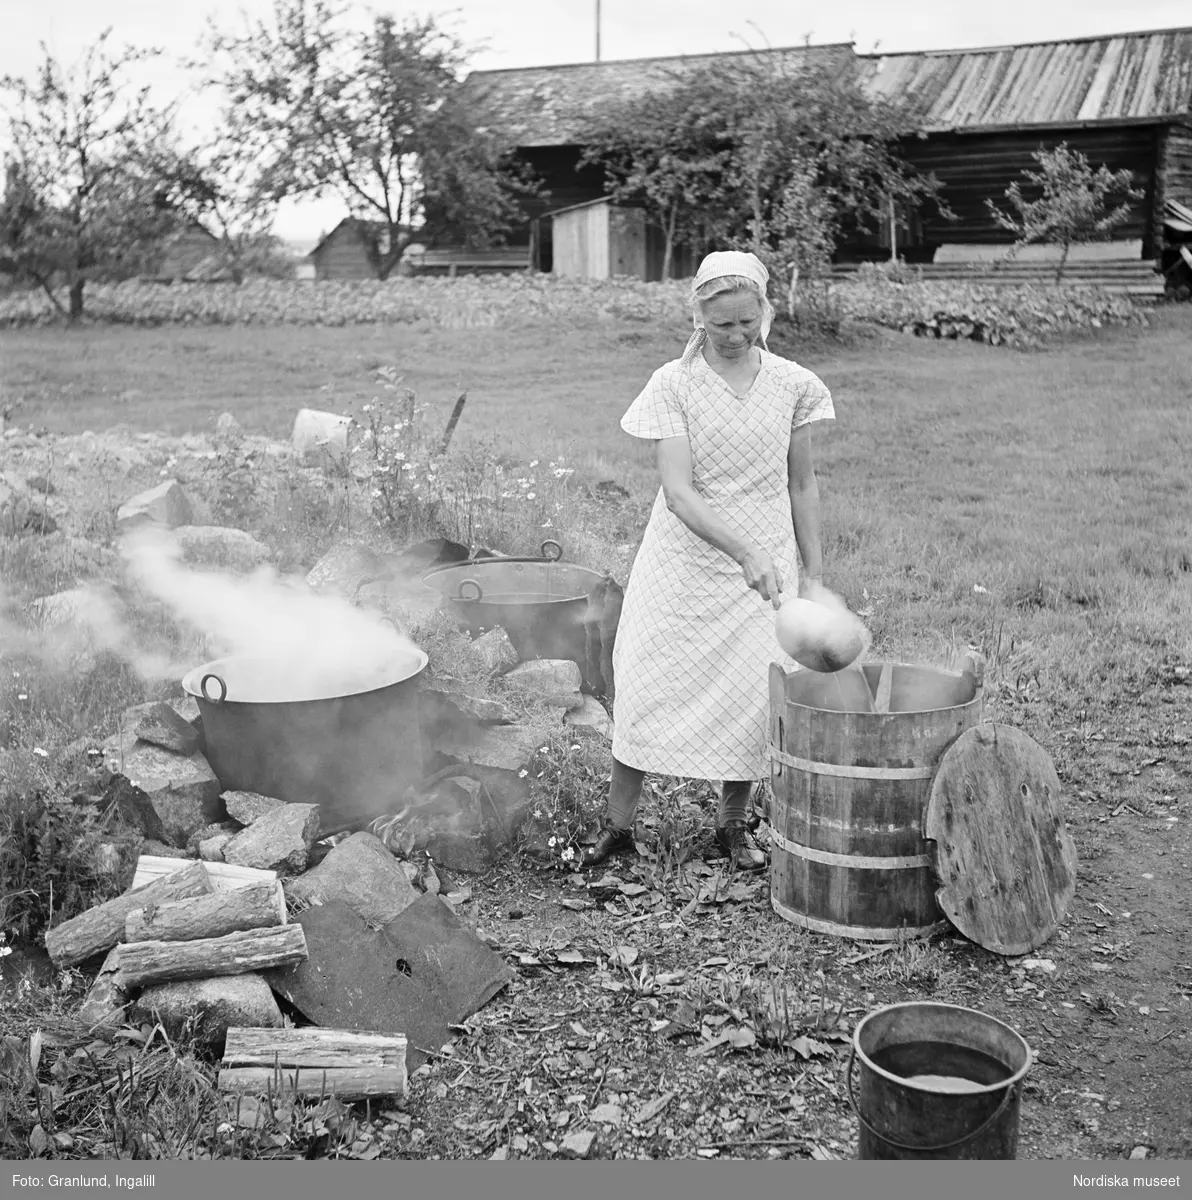 Man bryggde ofta på gårdarna, speciellt inför högtider och slåttern. Fanns inget brygghus bryggde man både utomhus och i köket. Kvinna brygger öl vid härd på gården i Gruddbo på Sollerön.